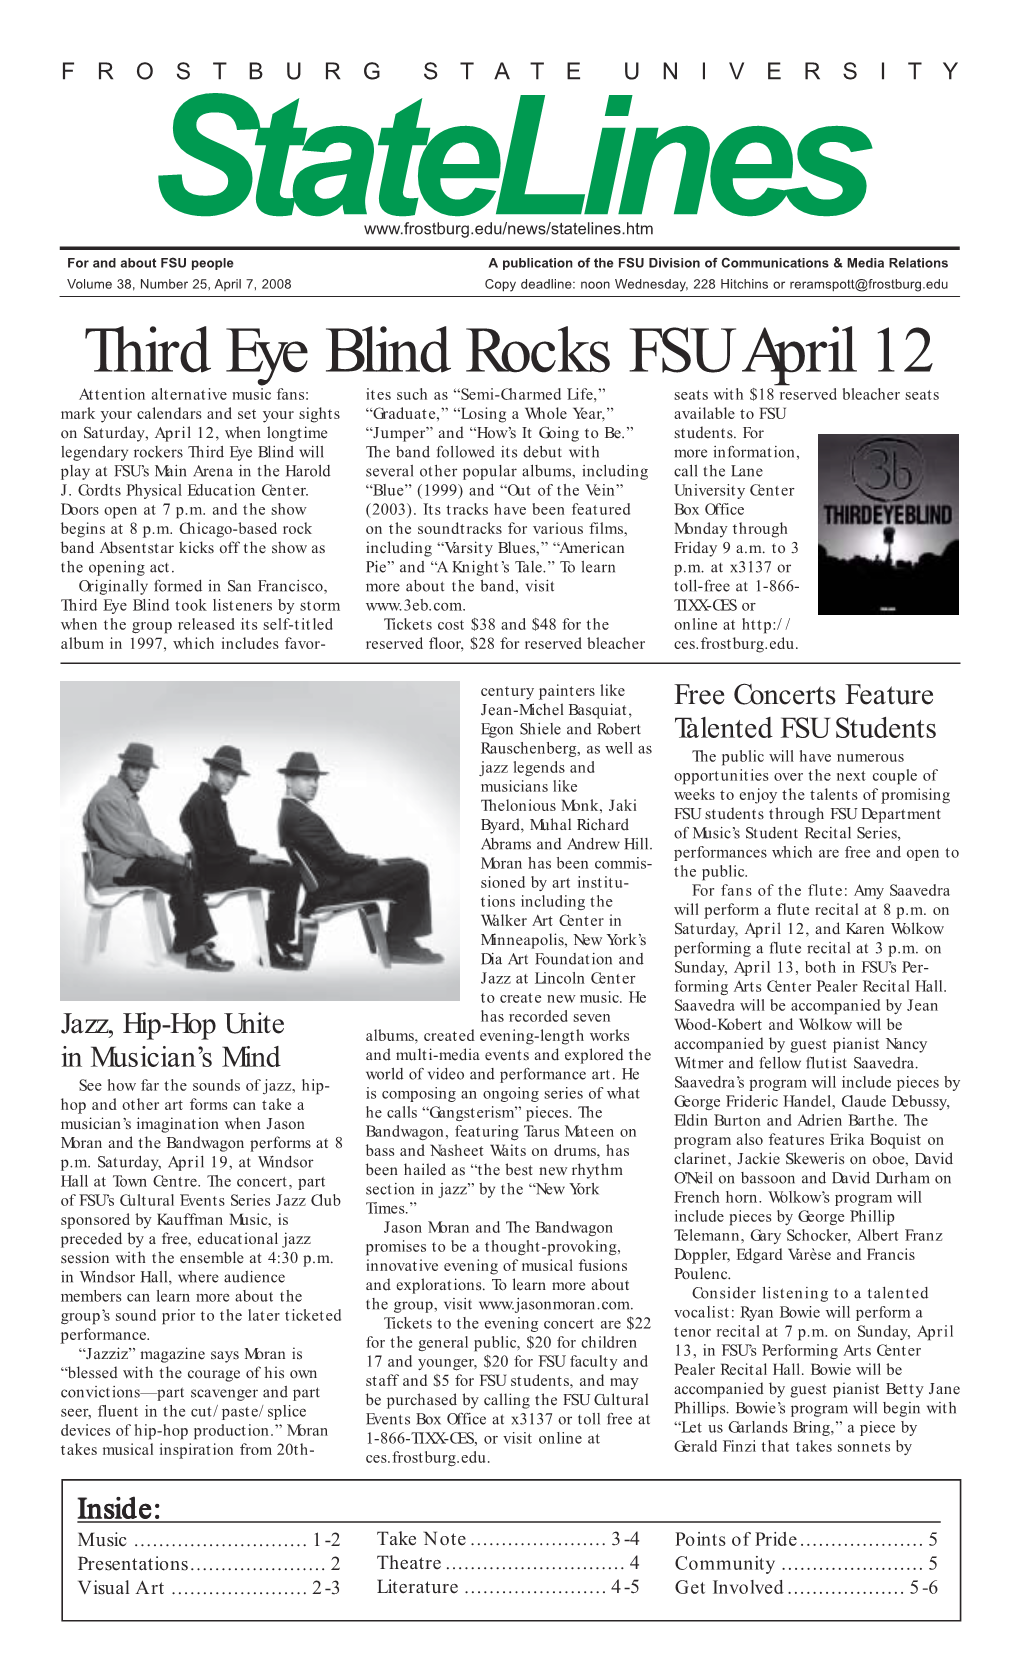 Third Eye Blind Rocks FSU April 12